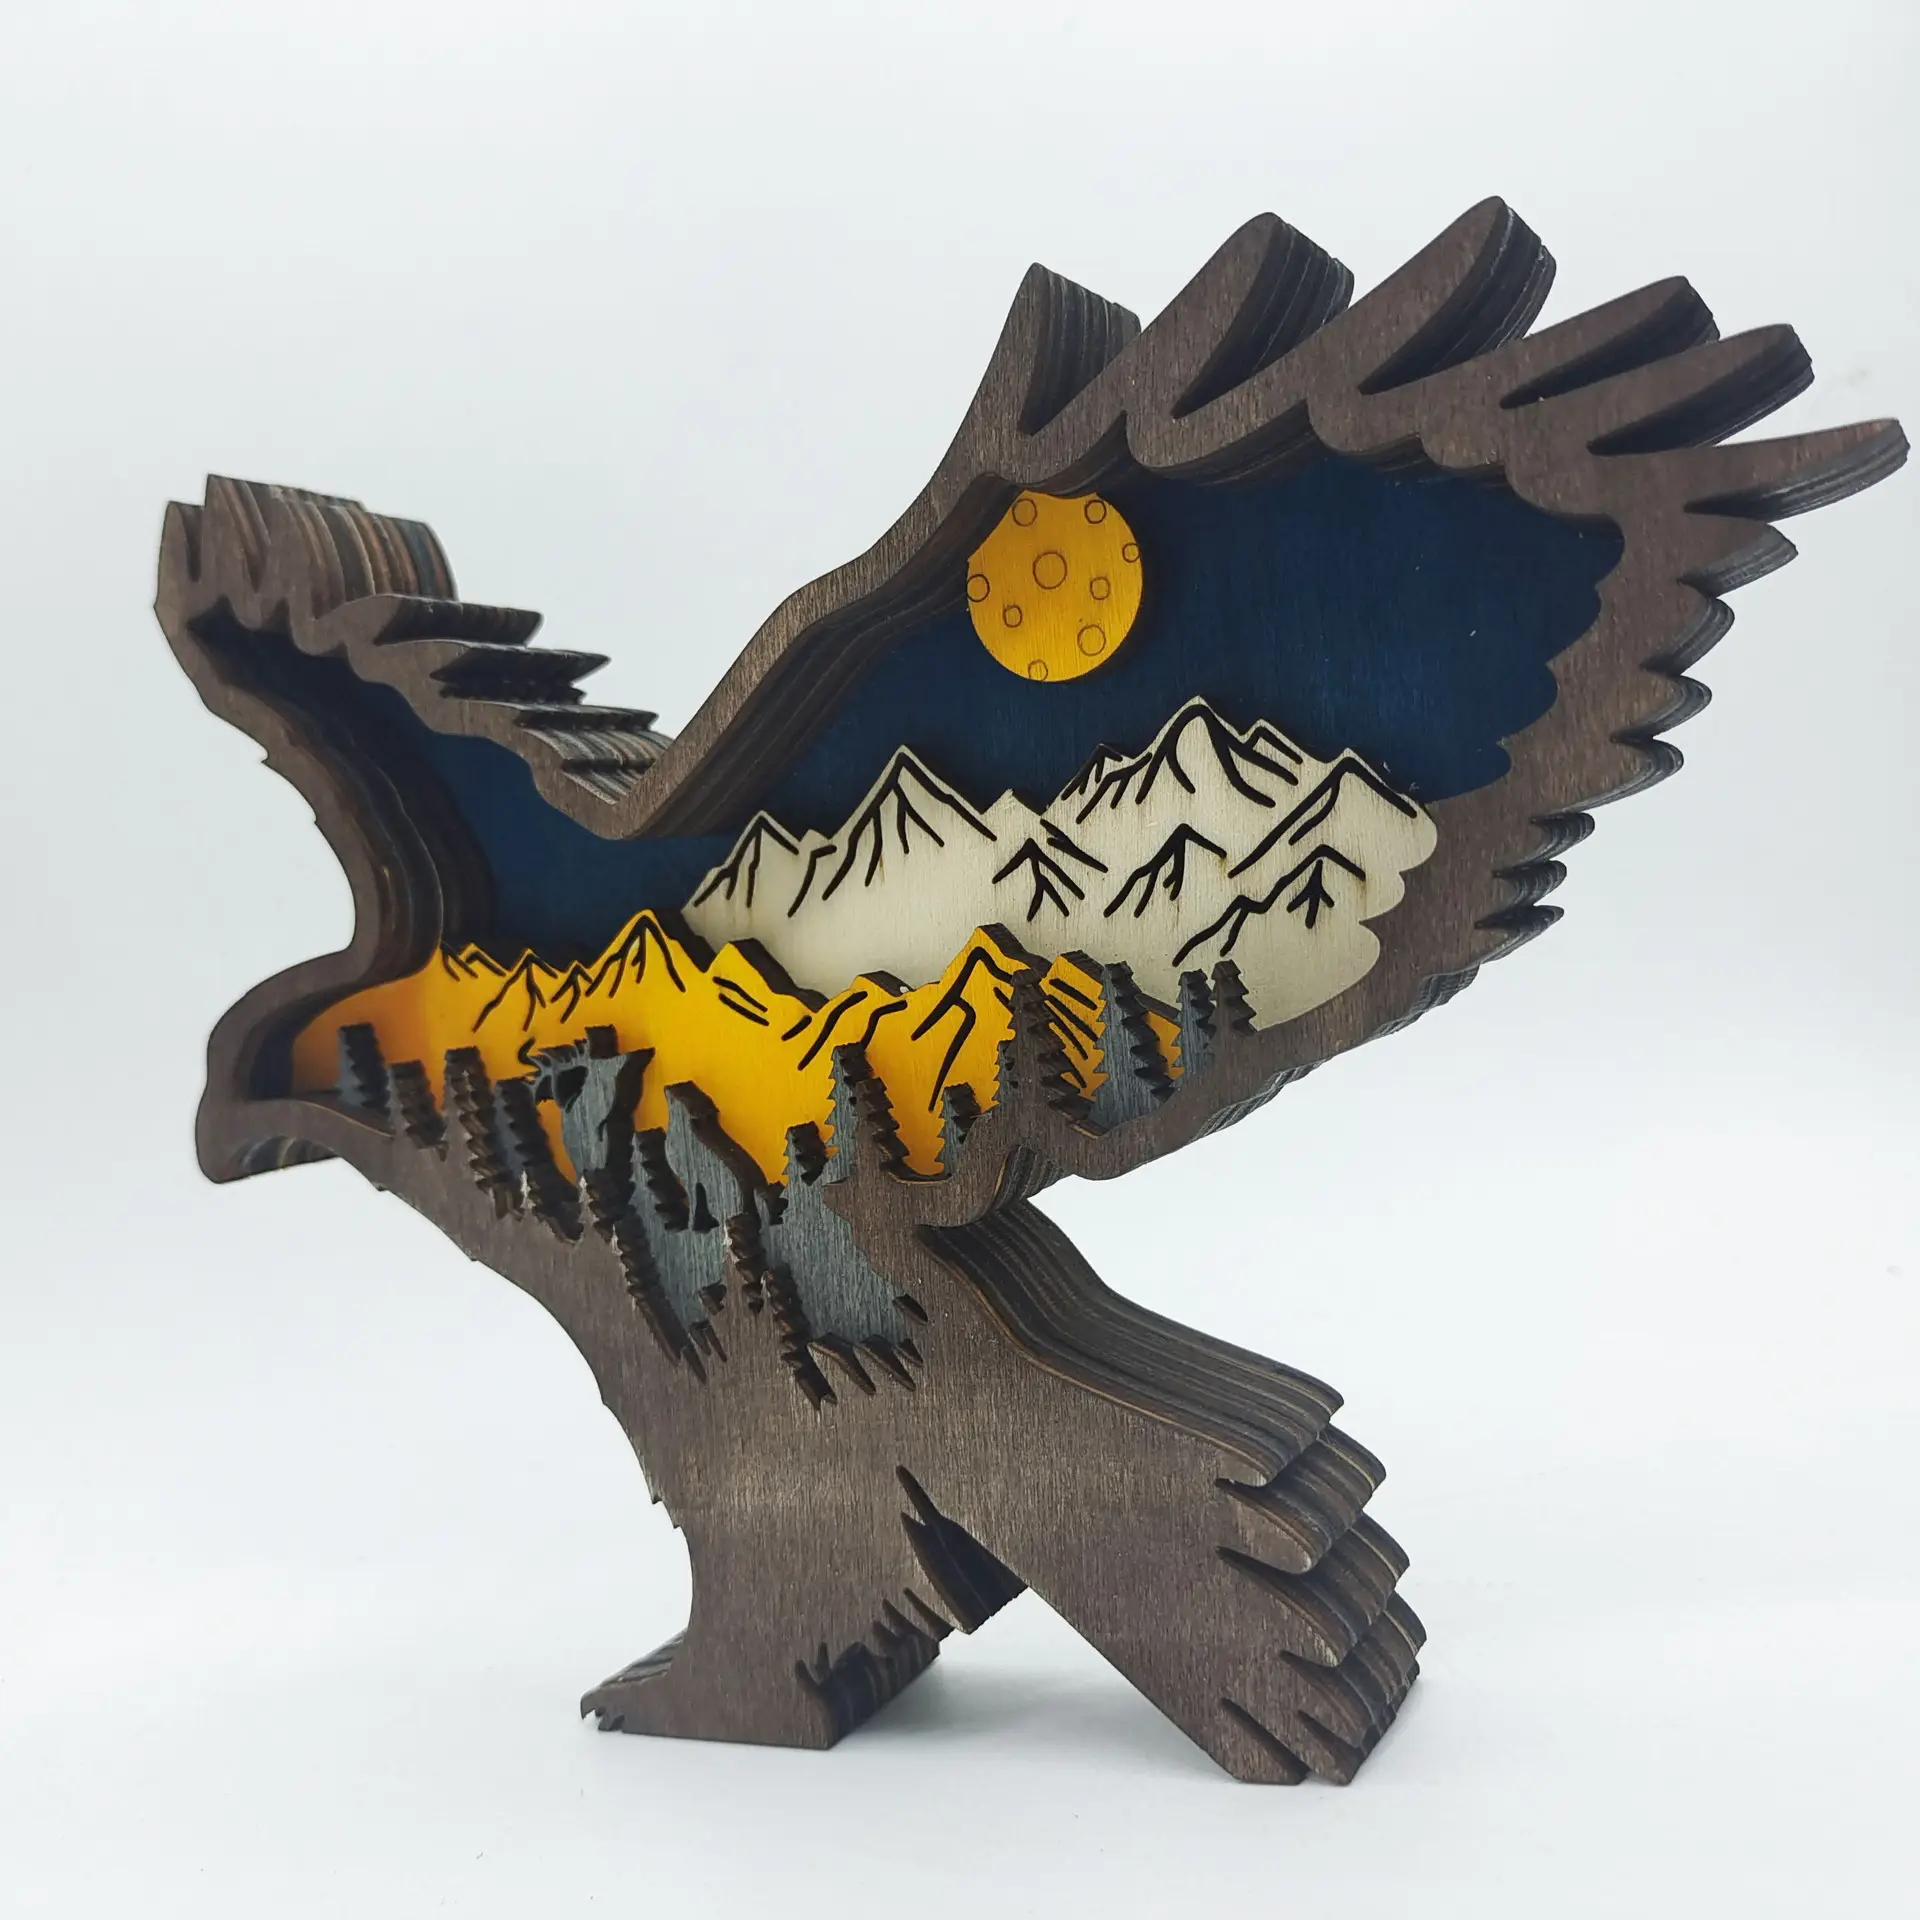 Artesanía de madera 3D multicapa de alta calidad personalizada decoración creativa de animales del bosque de madera